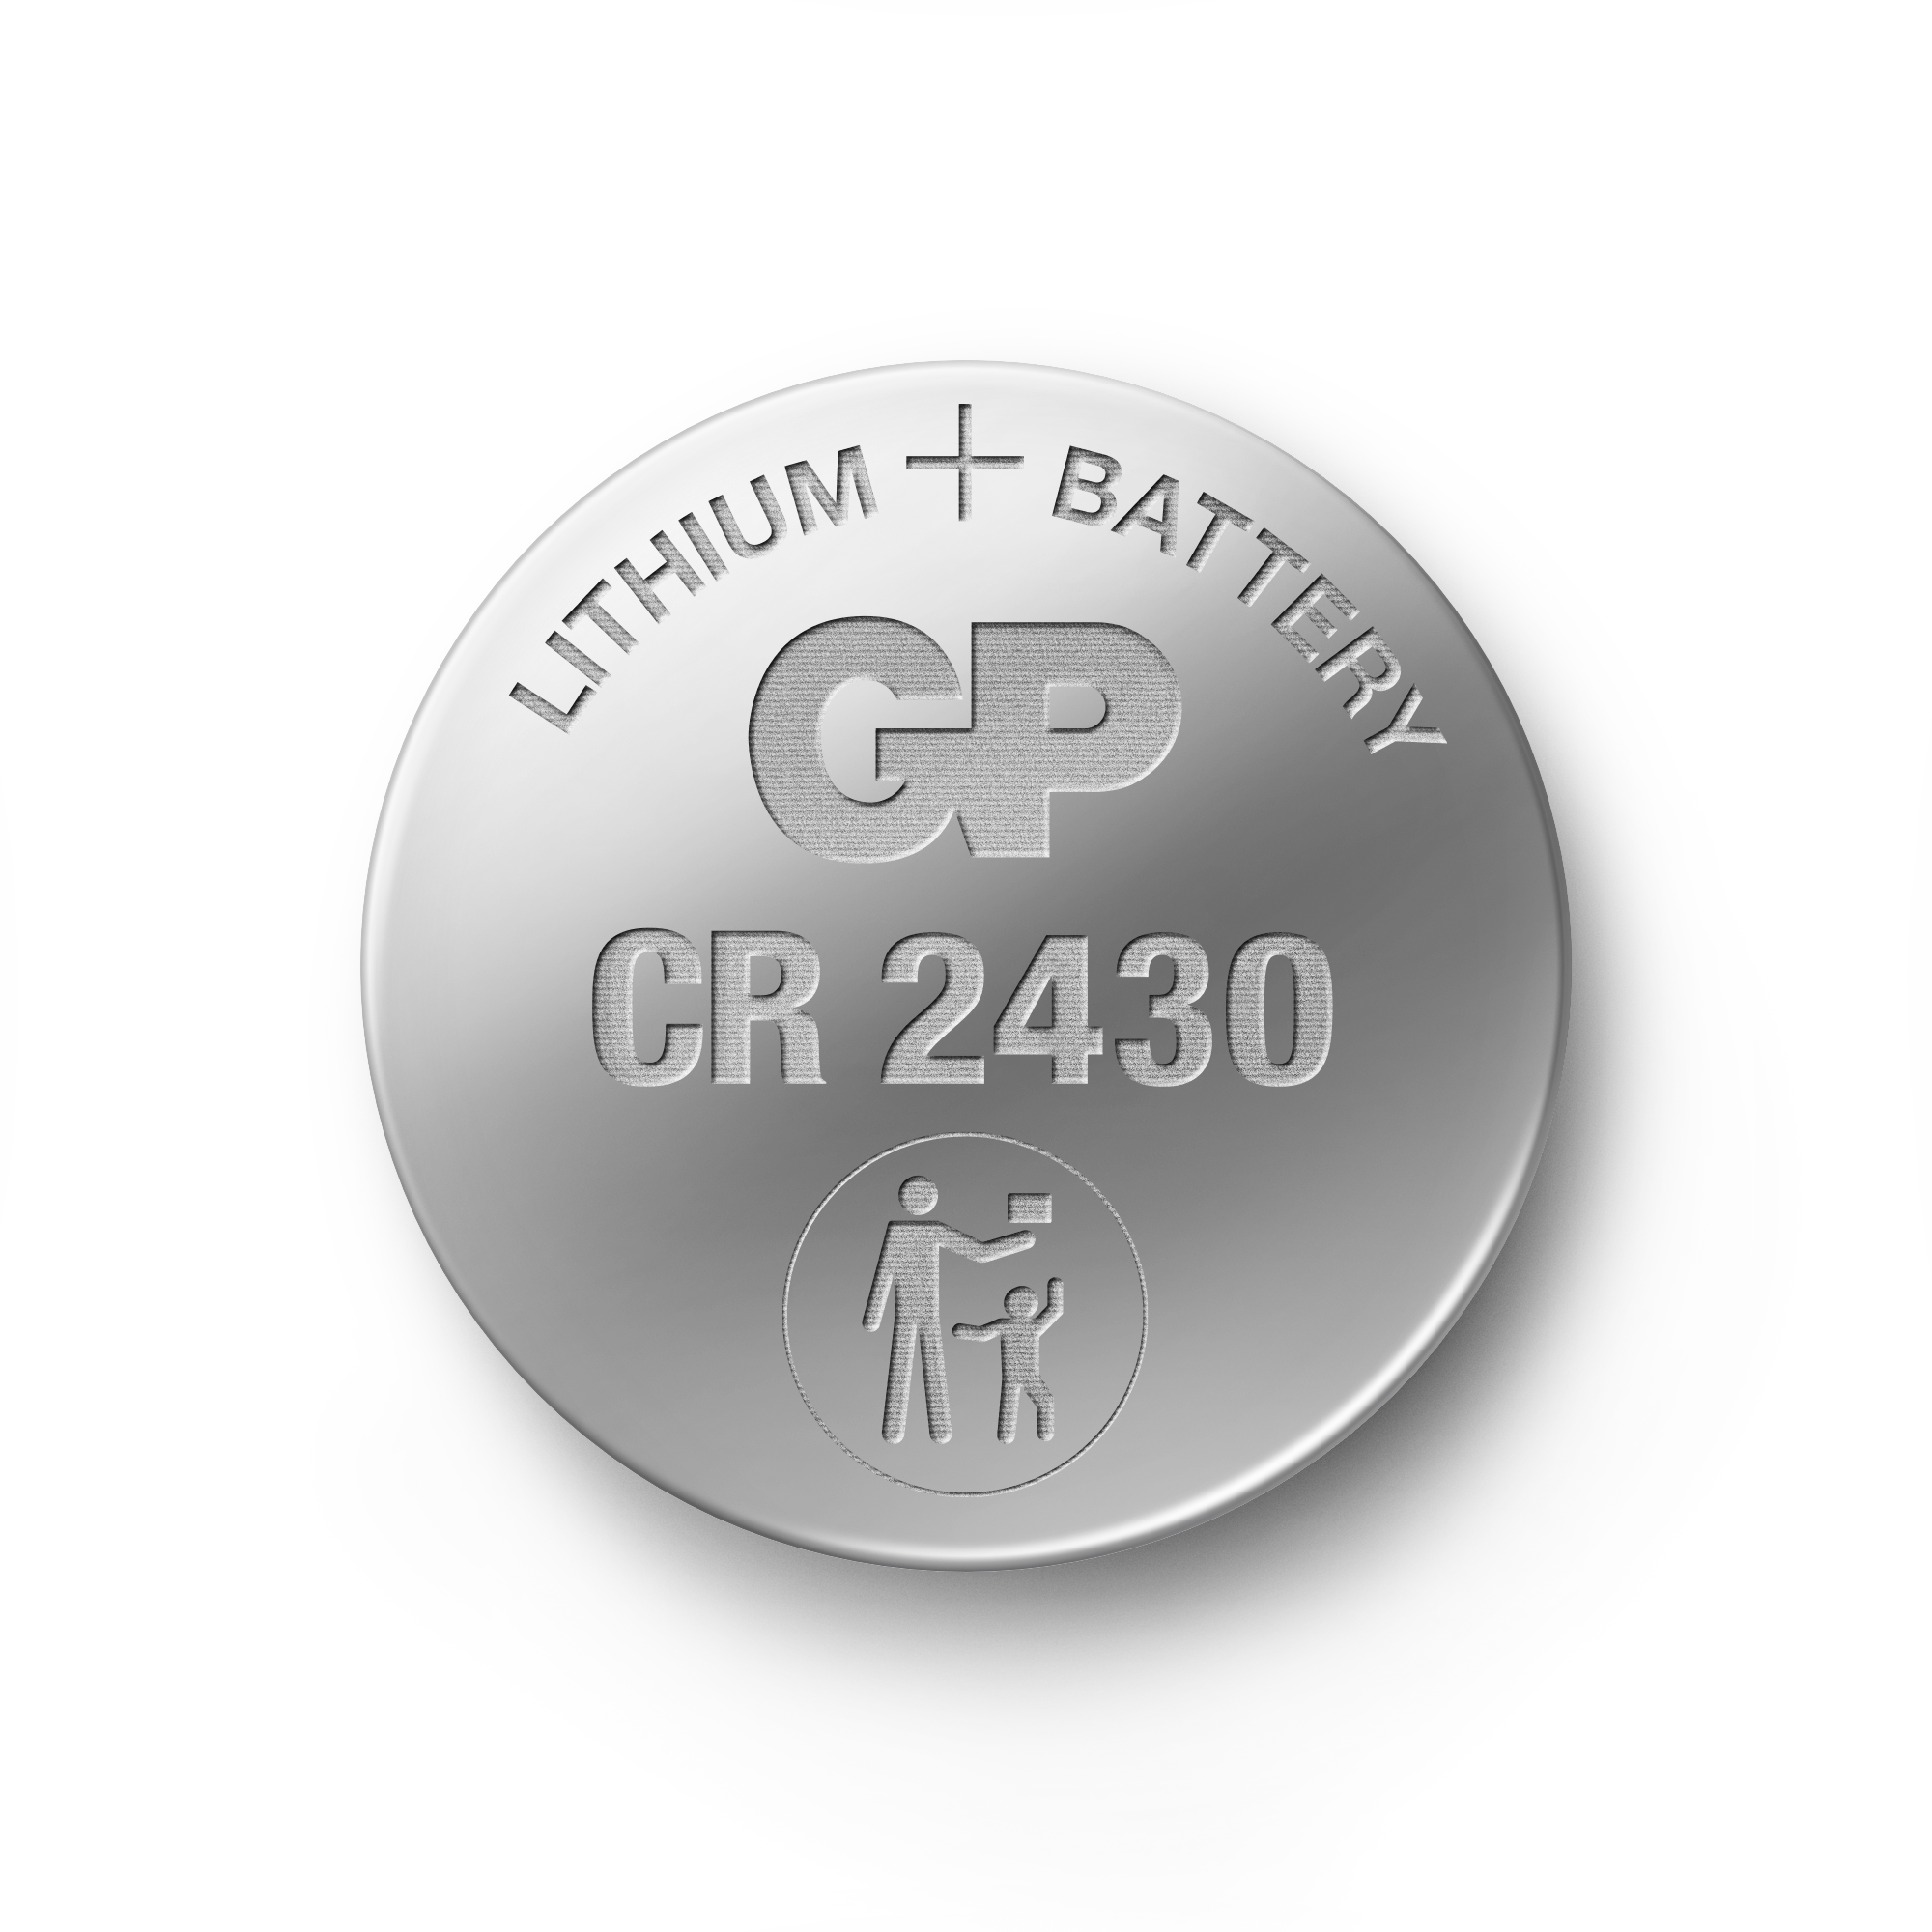 Lithium nappiparisto CR2430